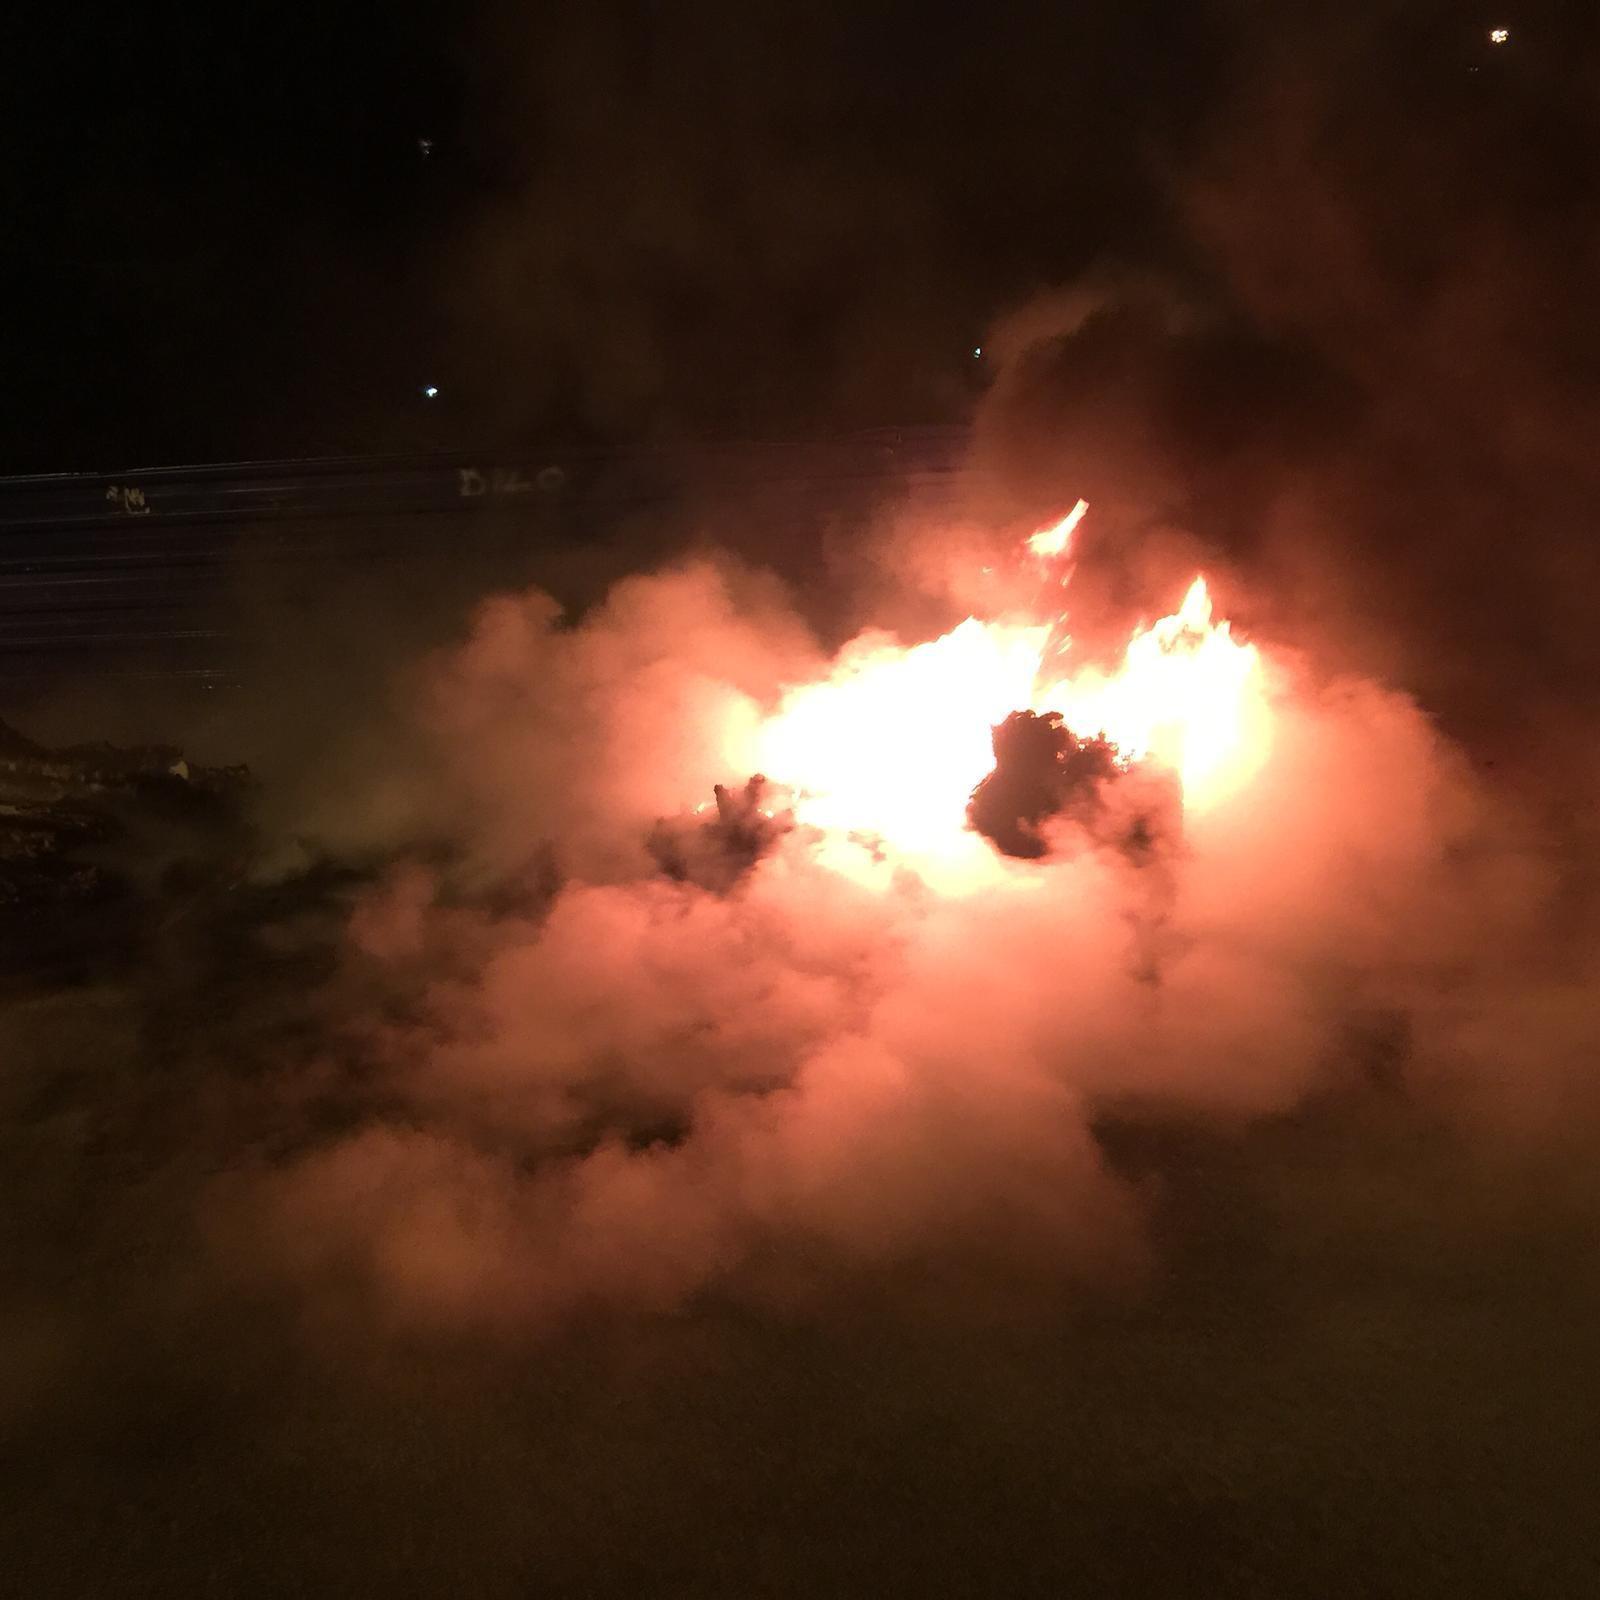 Çöpte çıkan yangın otomobili küle döndürüyordu